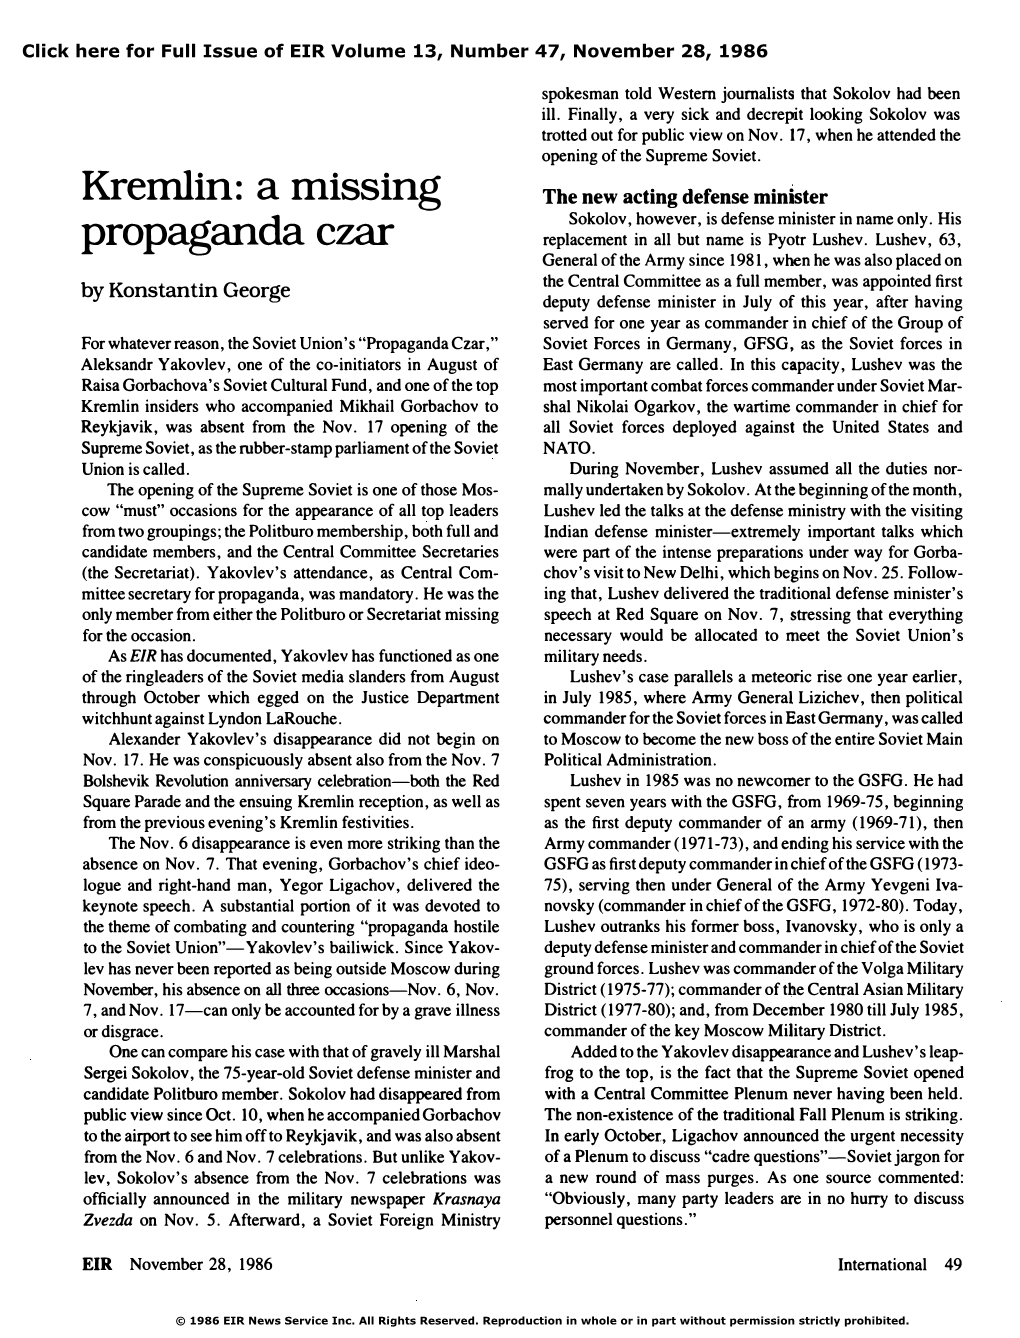 Kremlin: a Missing Propaganda Czar